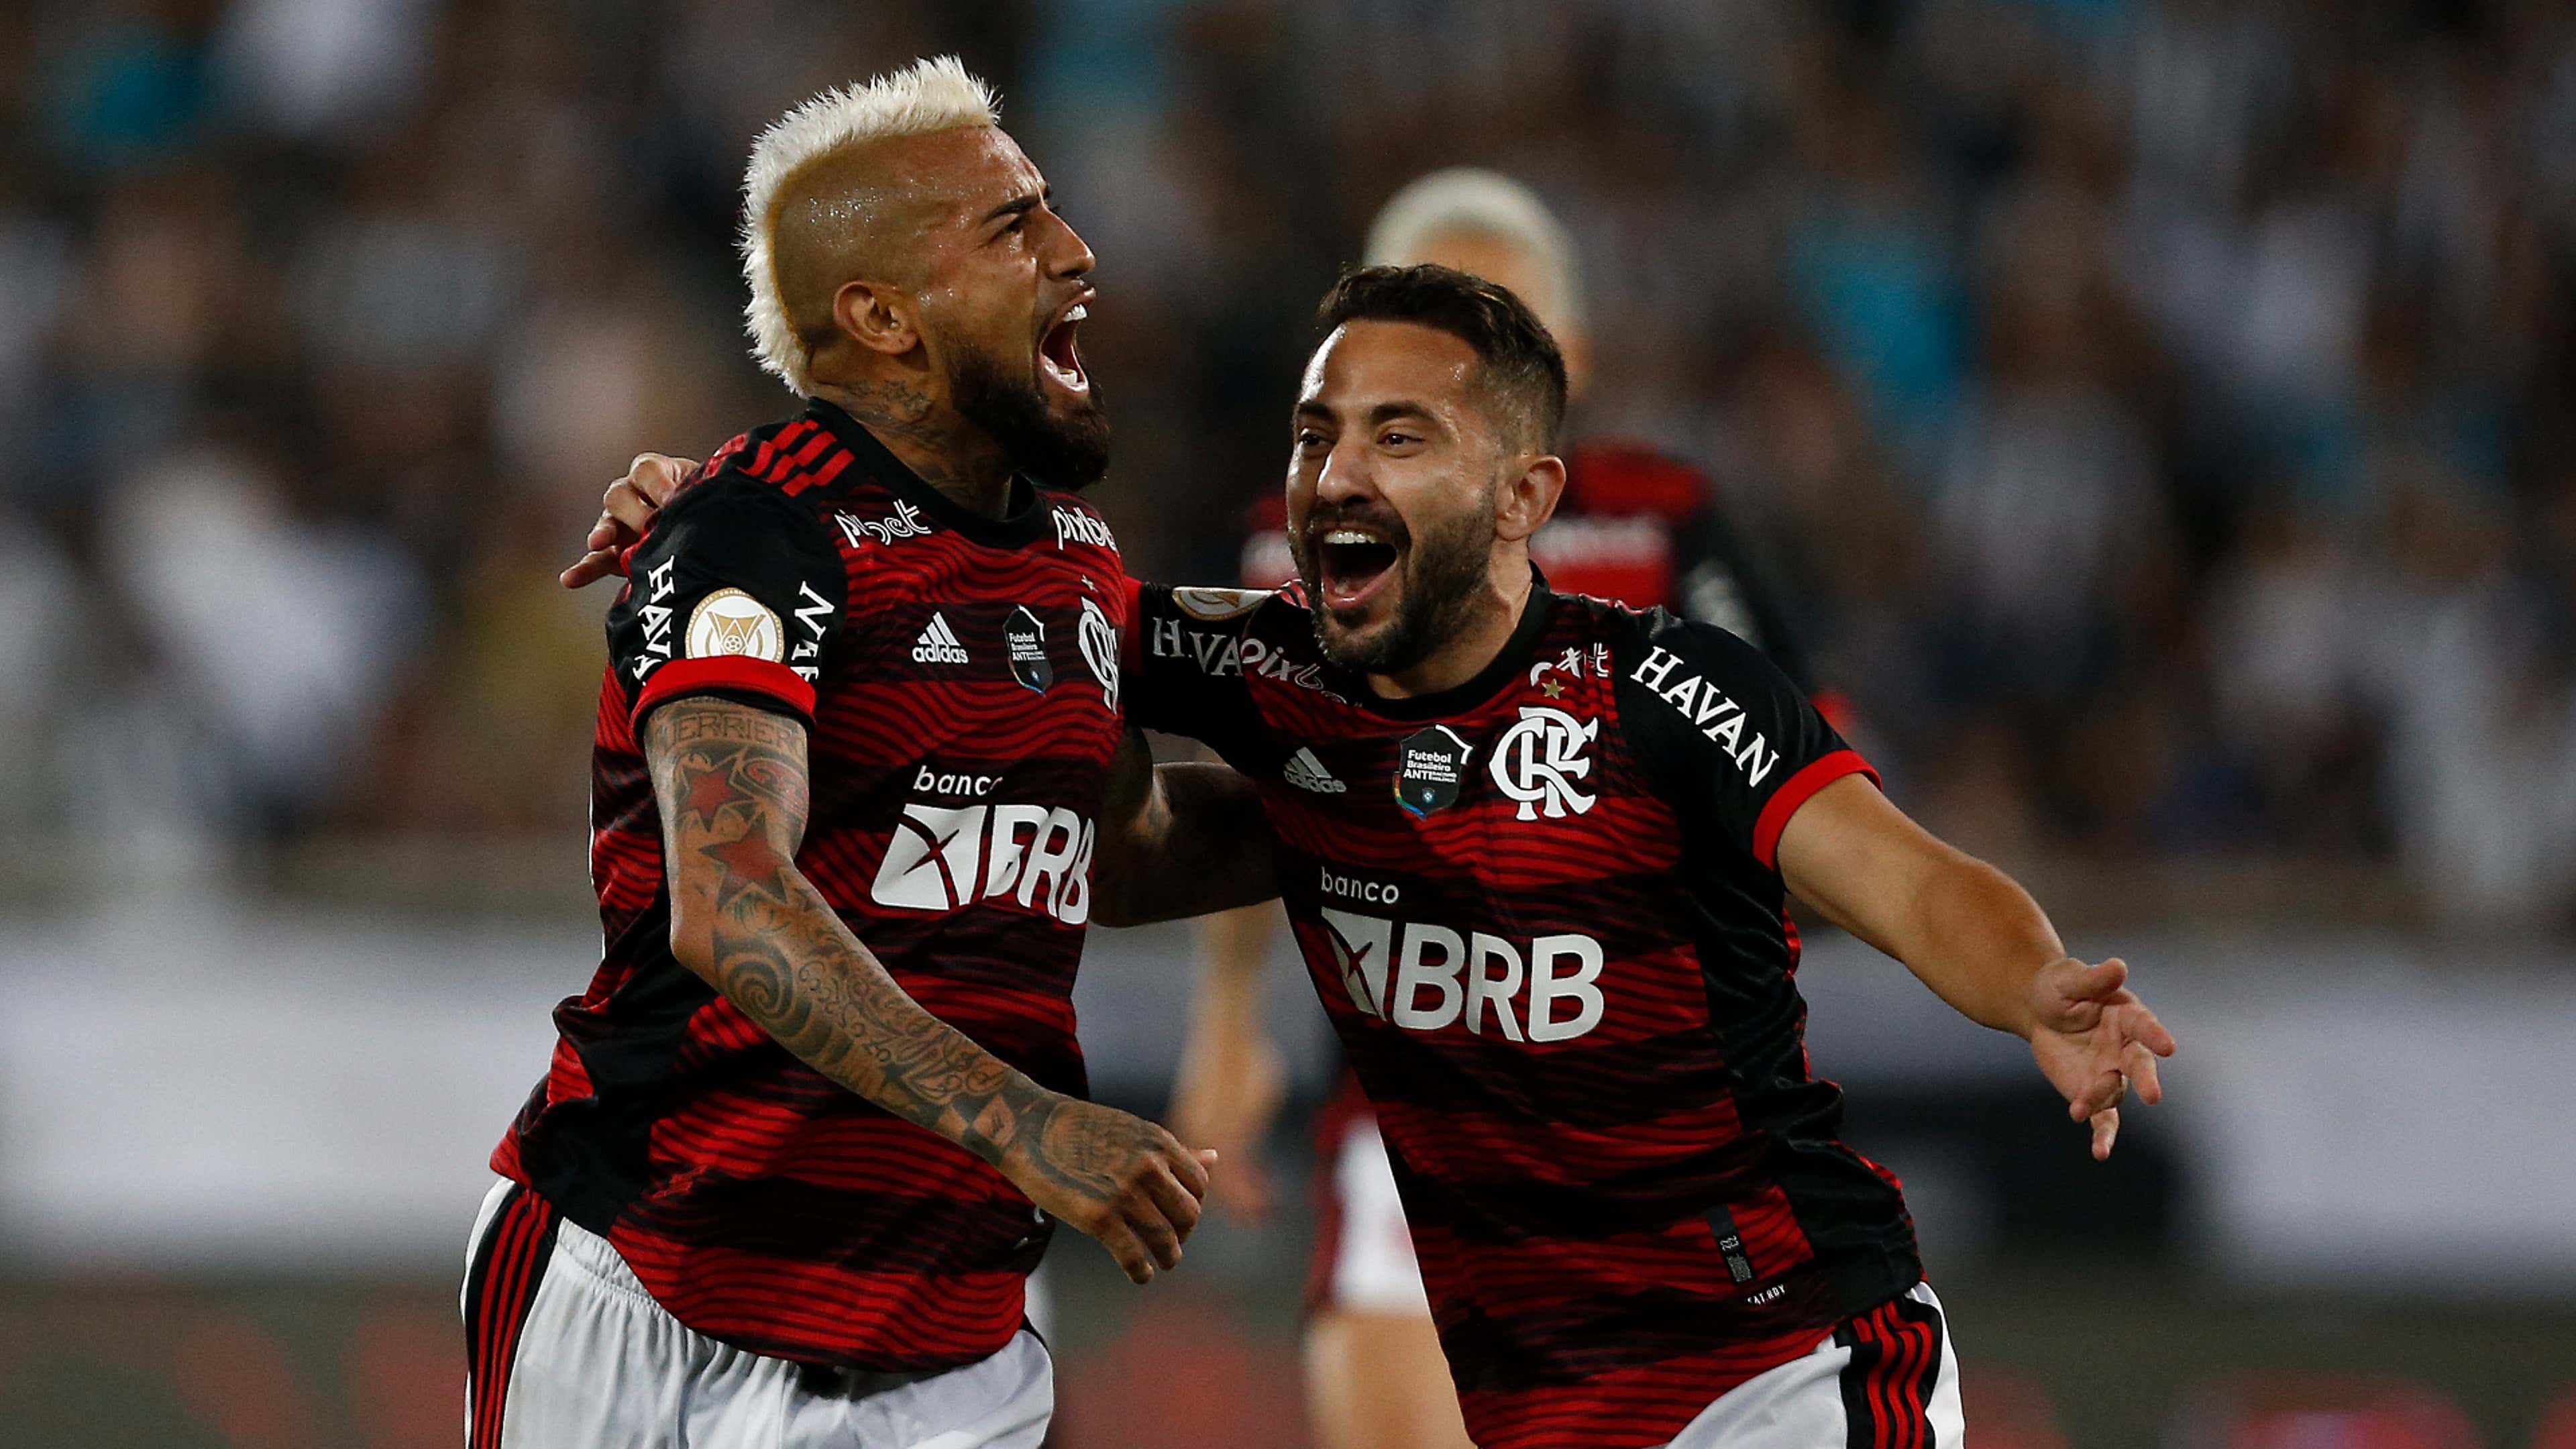 Flamengo em Multicanais: Acesse Tudo em Tempo Real